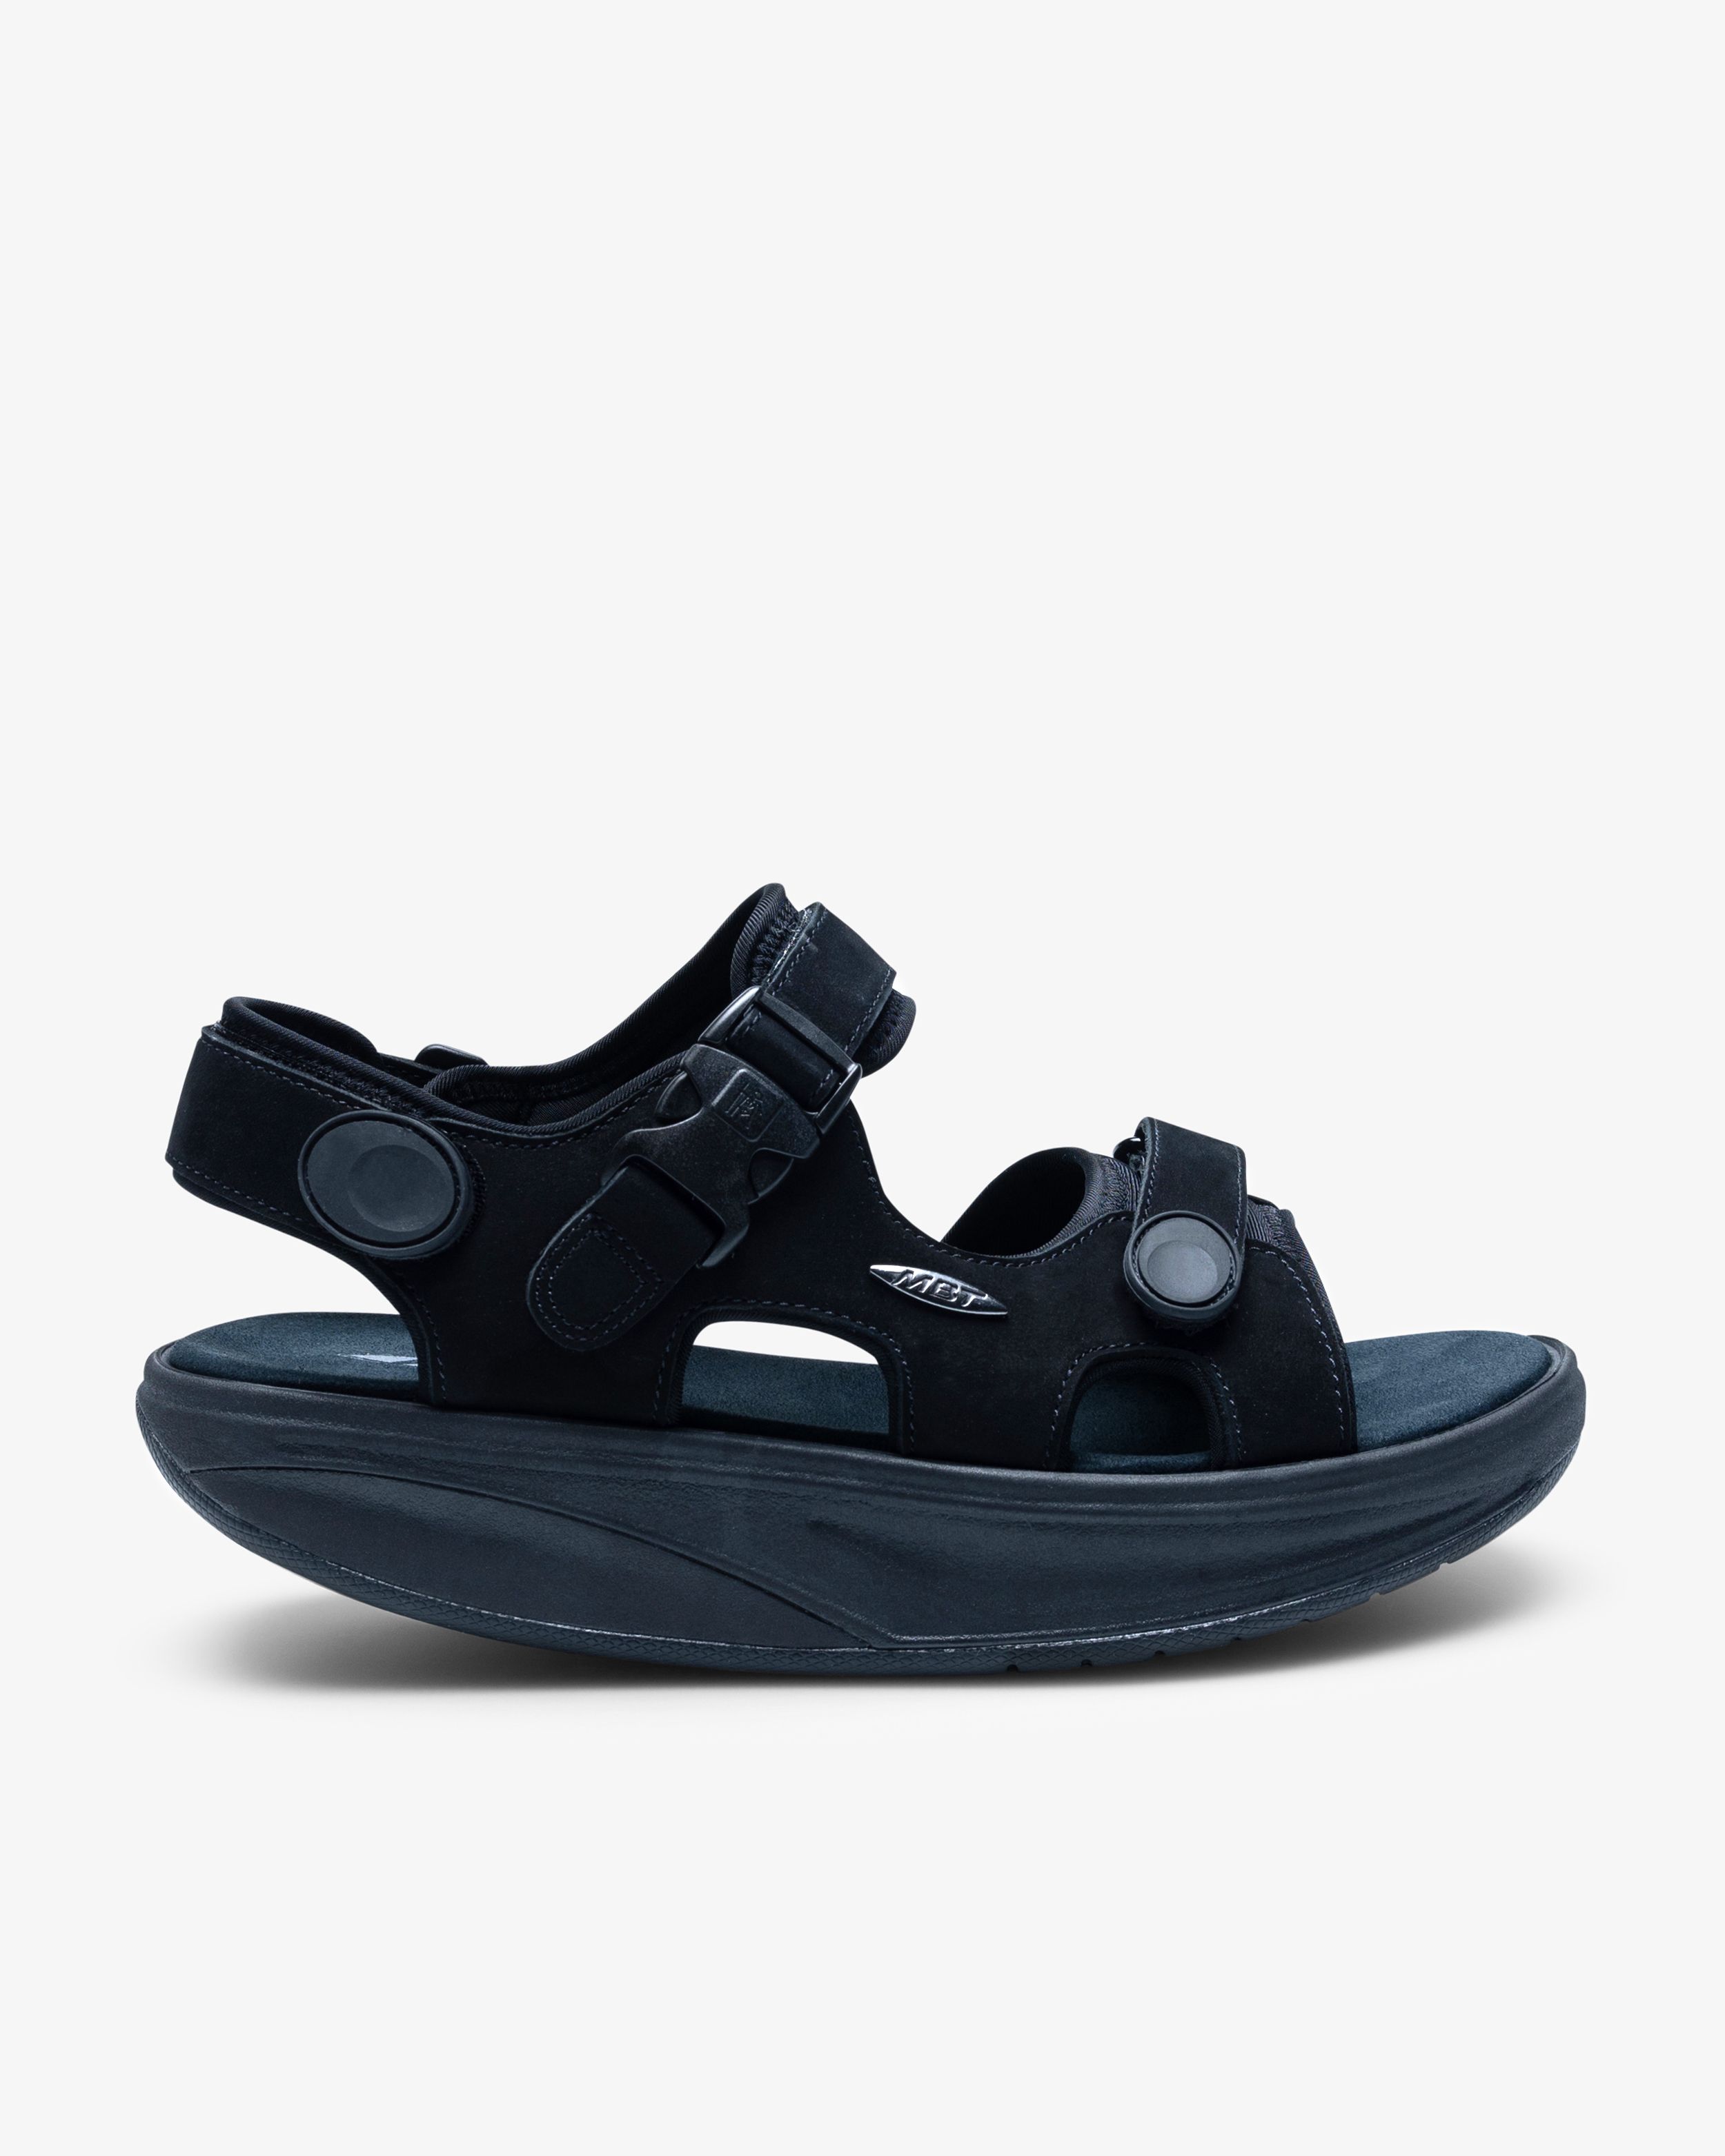 Afrika Hong Kong udbytte Mbt Kisumu Classic Dynamic Black Sandaler | Køb på color4care